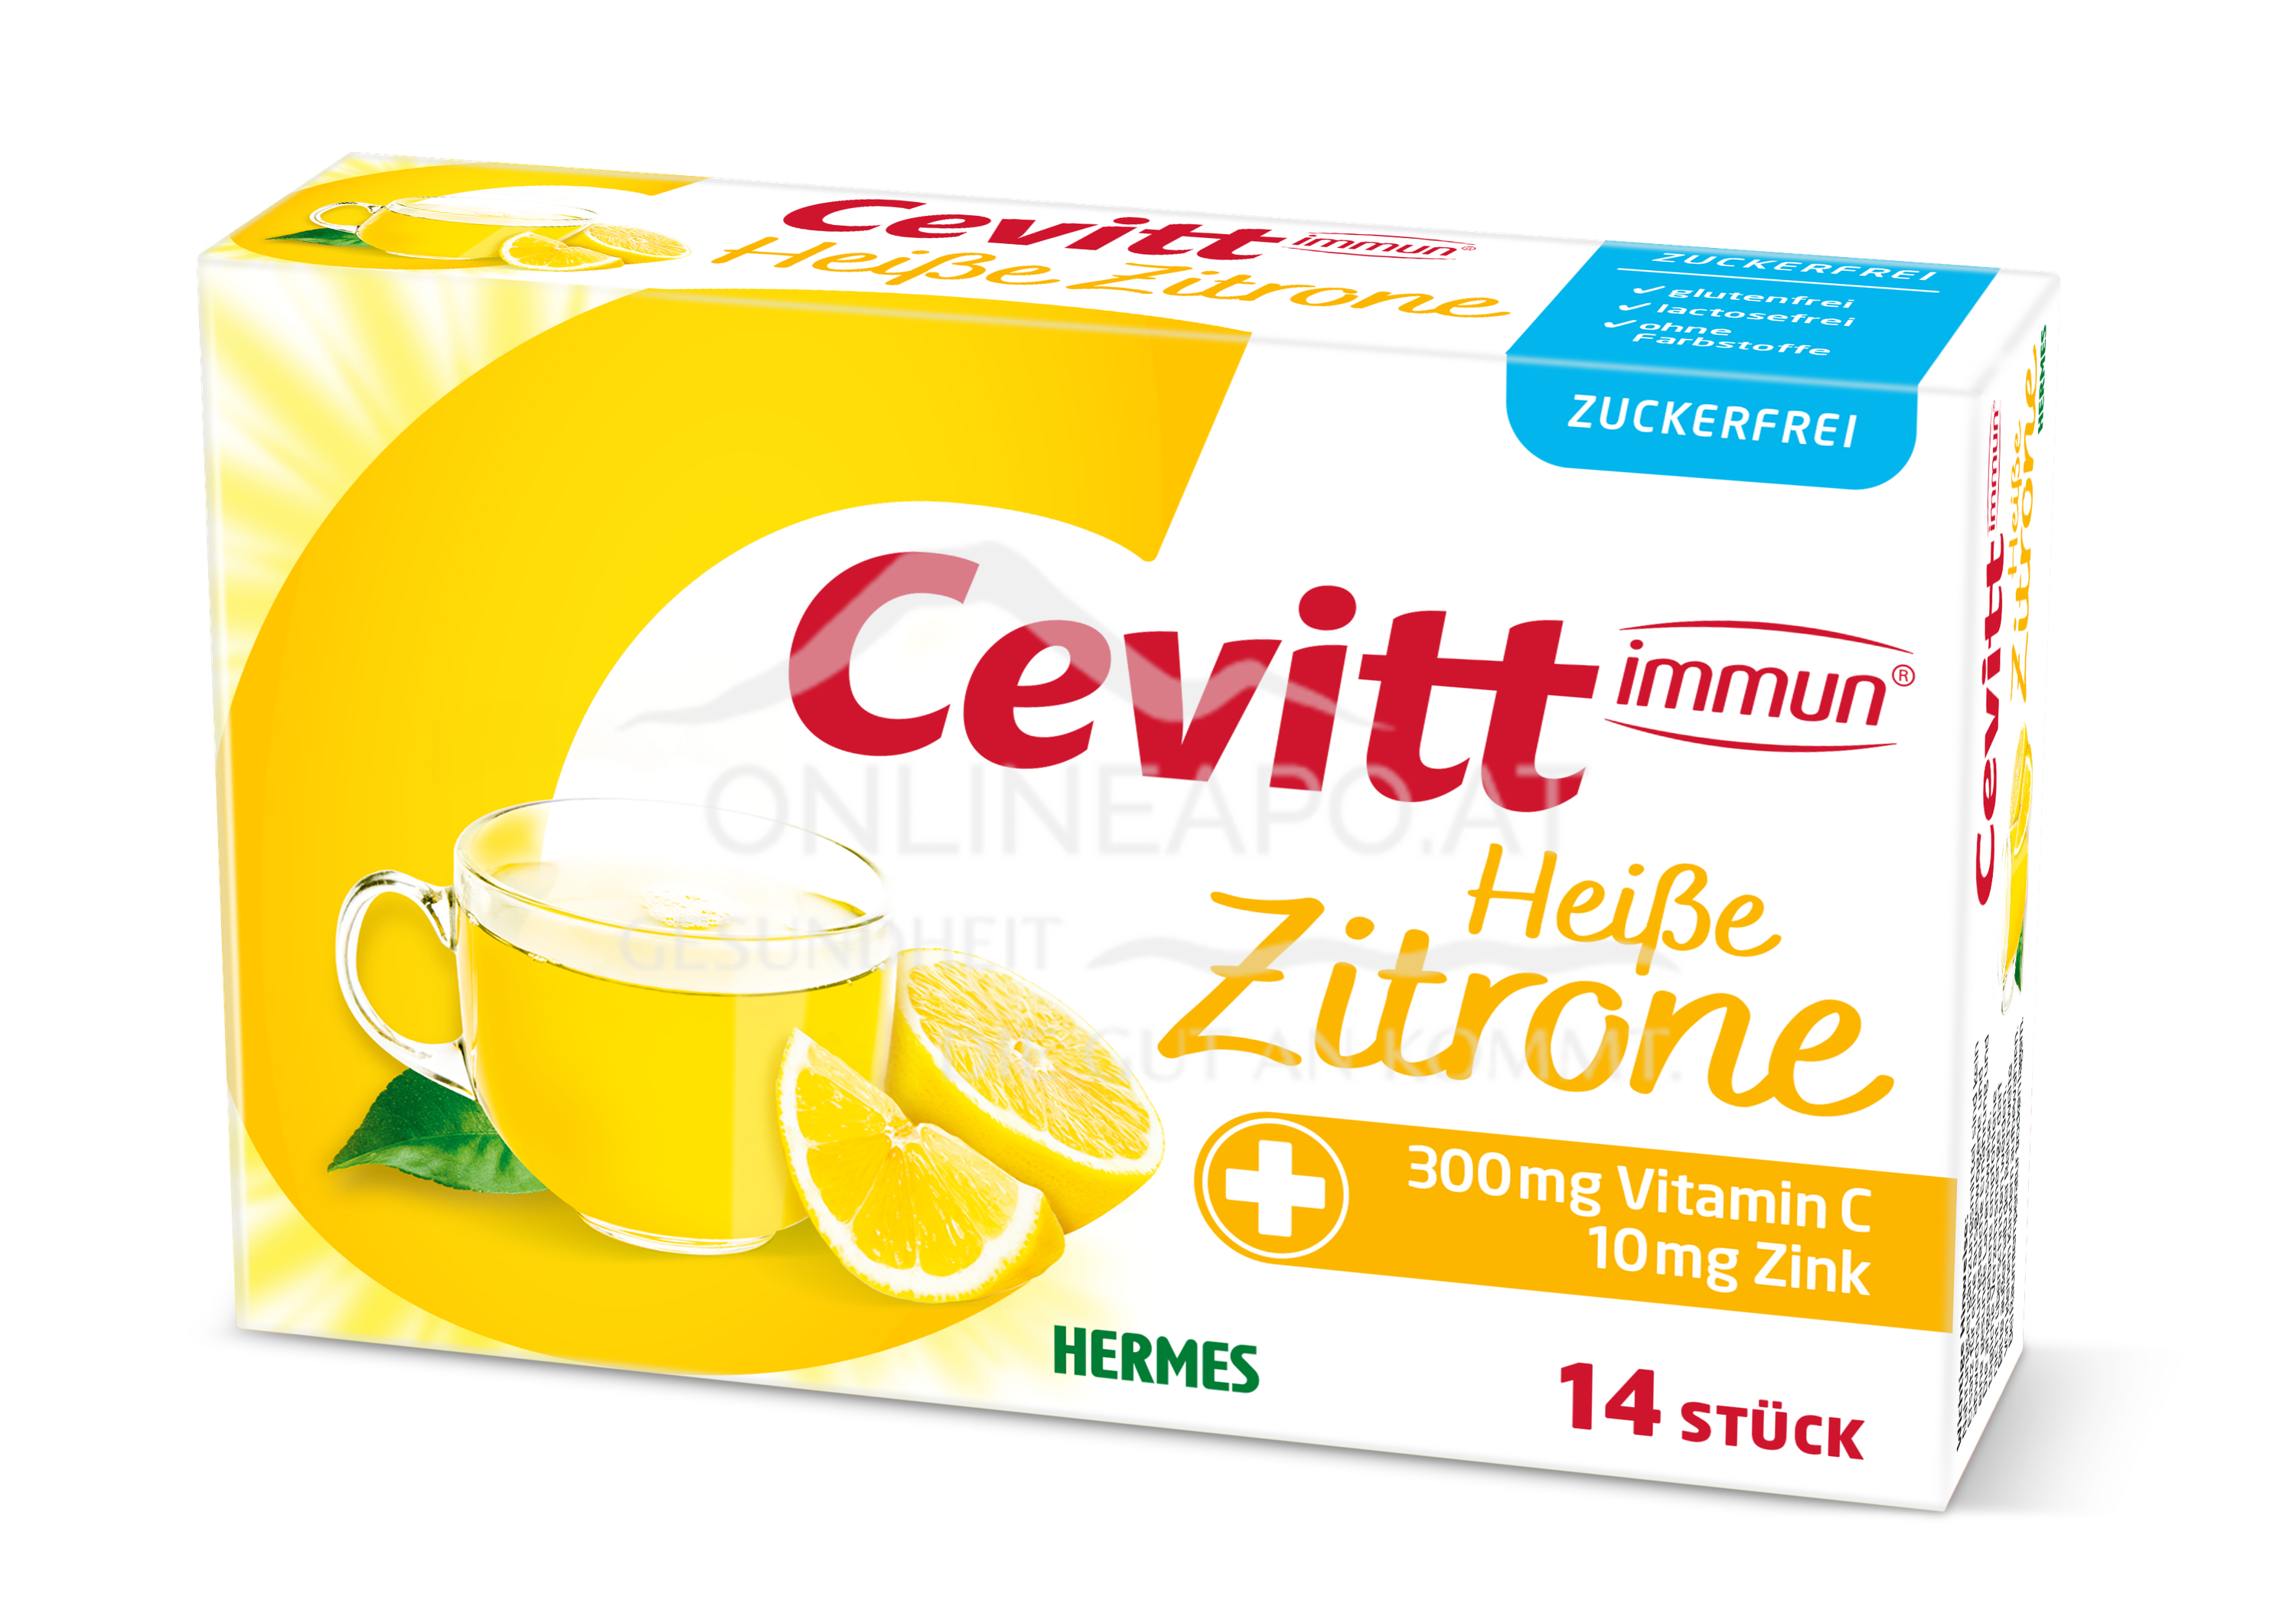 Cevitt immun® Heiße Zitrone zuckerfrei